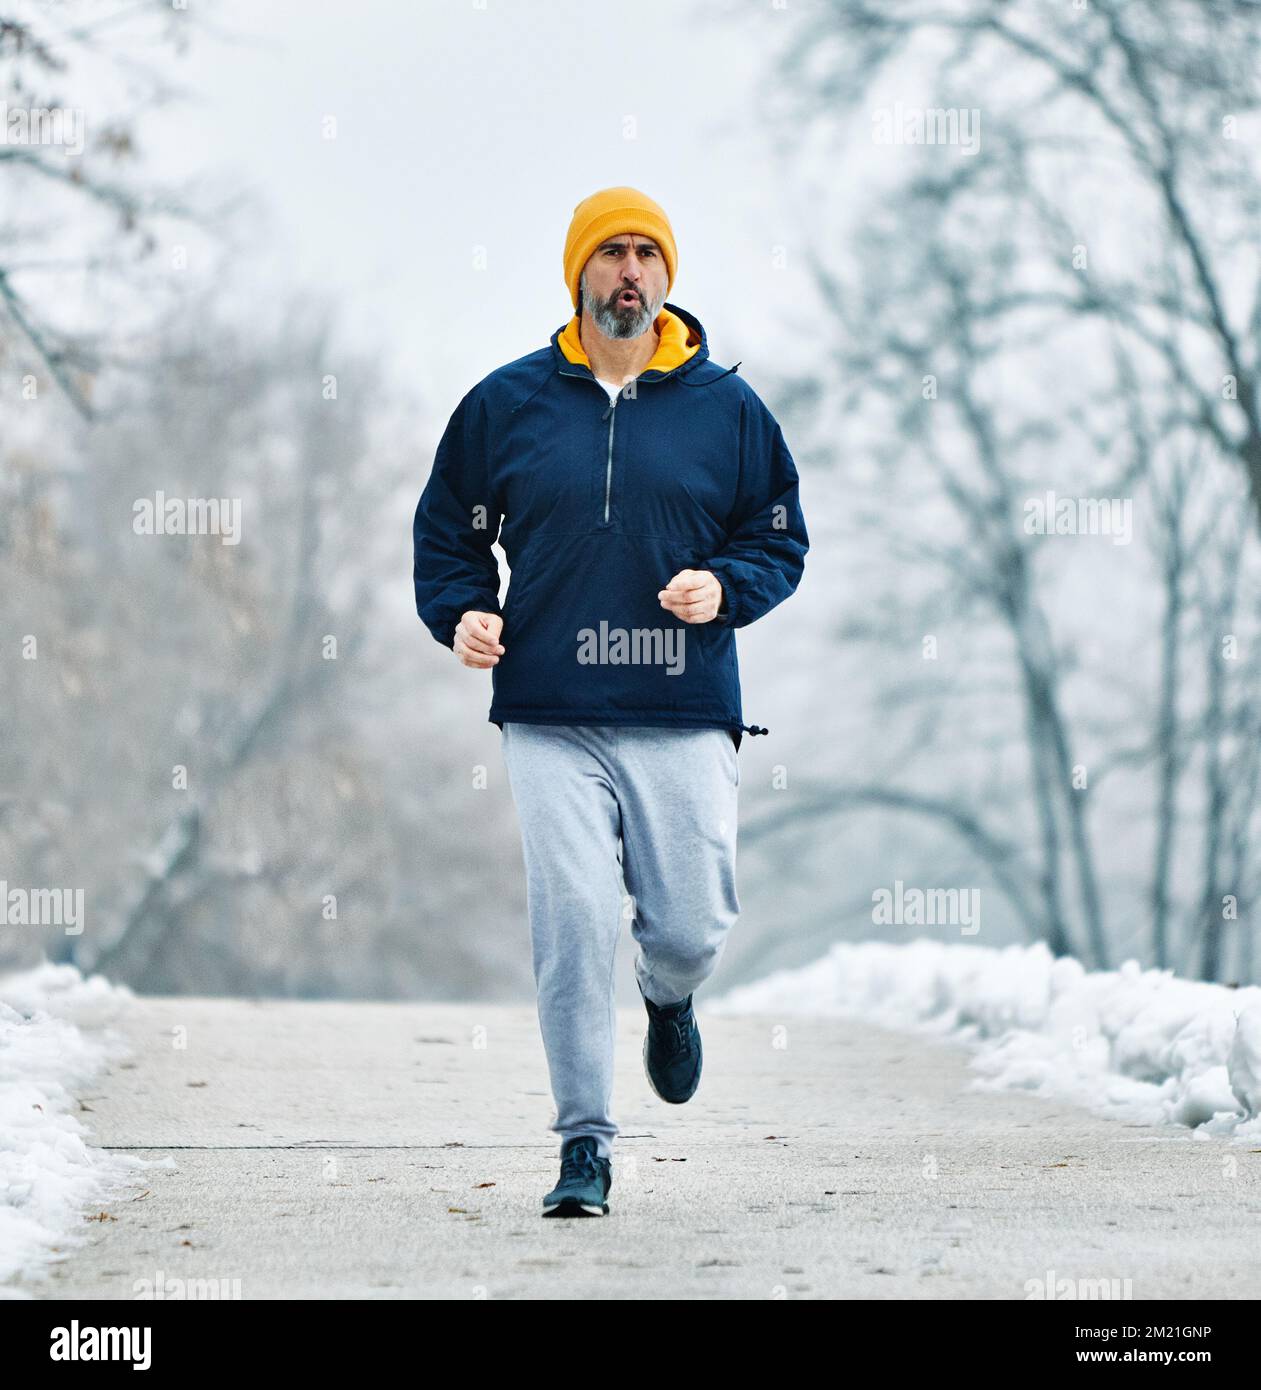 senior fitness homme sport actif exercice course jogging santé coureur taille jogger entraînement athlète entraînement vitesse marathon vieux hiver froid neige Banque D'Images